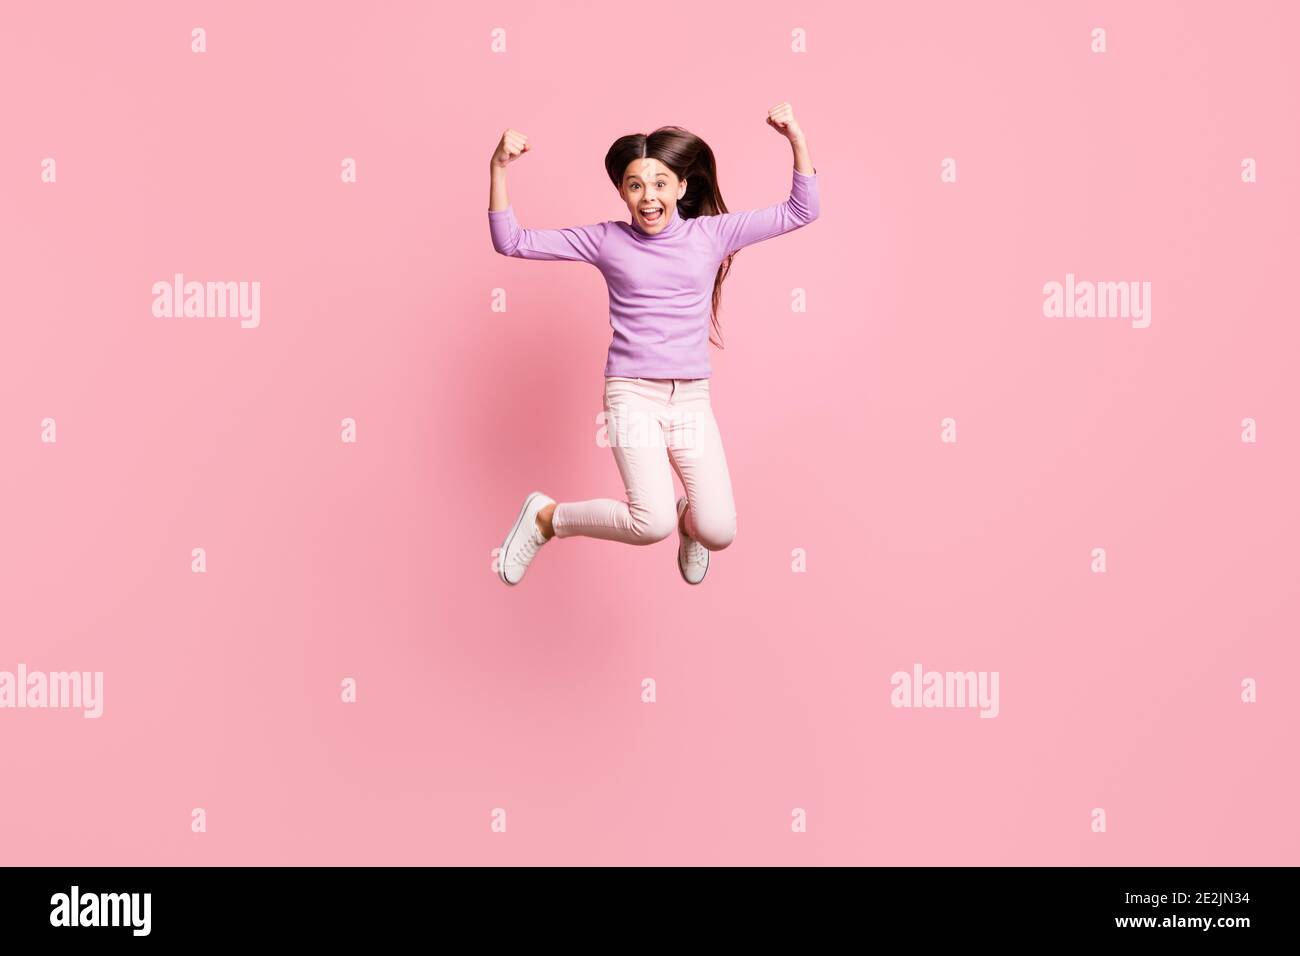 Foto a lunghezza intera di spettacolo di salto di bambina pazza piccola le mani tricipite indossano pantaloni viola in pullover isolati di colore rosa sfondo Foto Stock